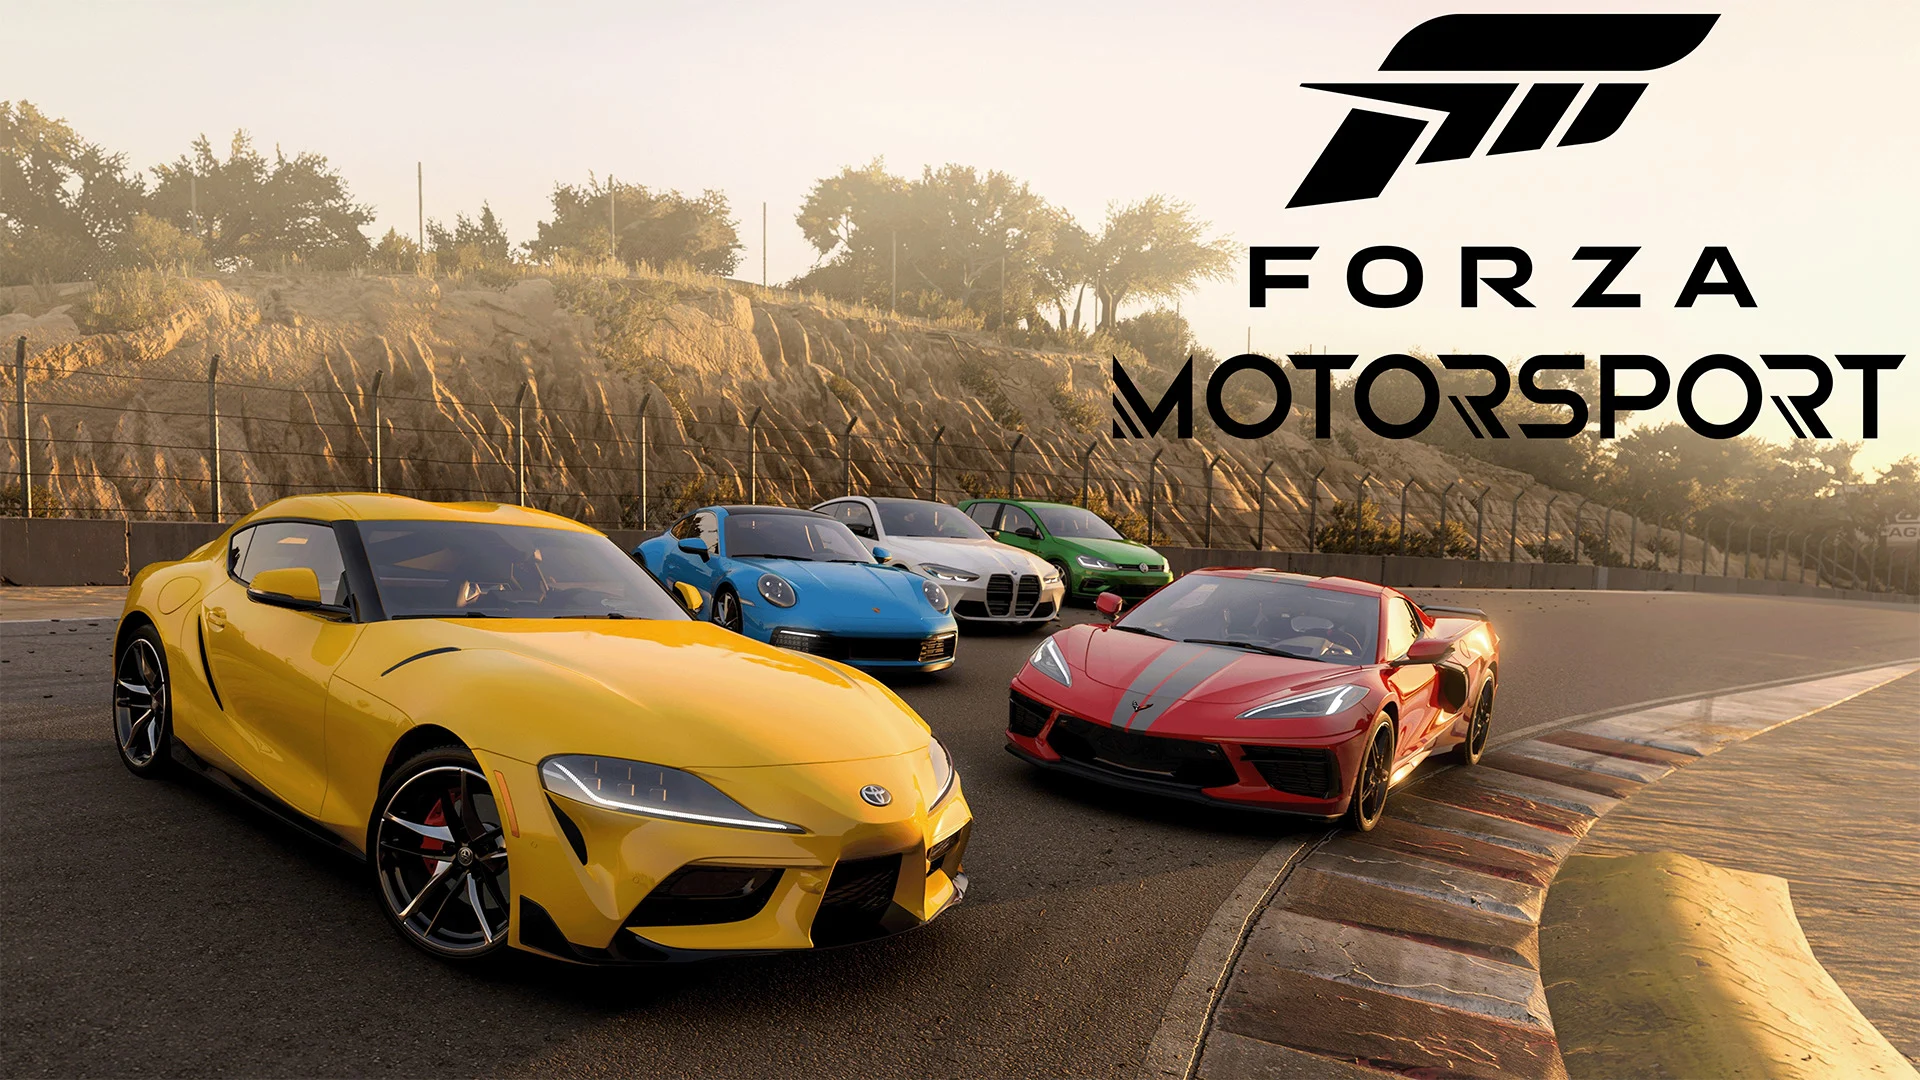 Forza Motorsport Update 1.0 mit einer Reihe von Fehlerbehebungen und Gameplay-Verbesserungen